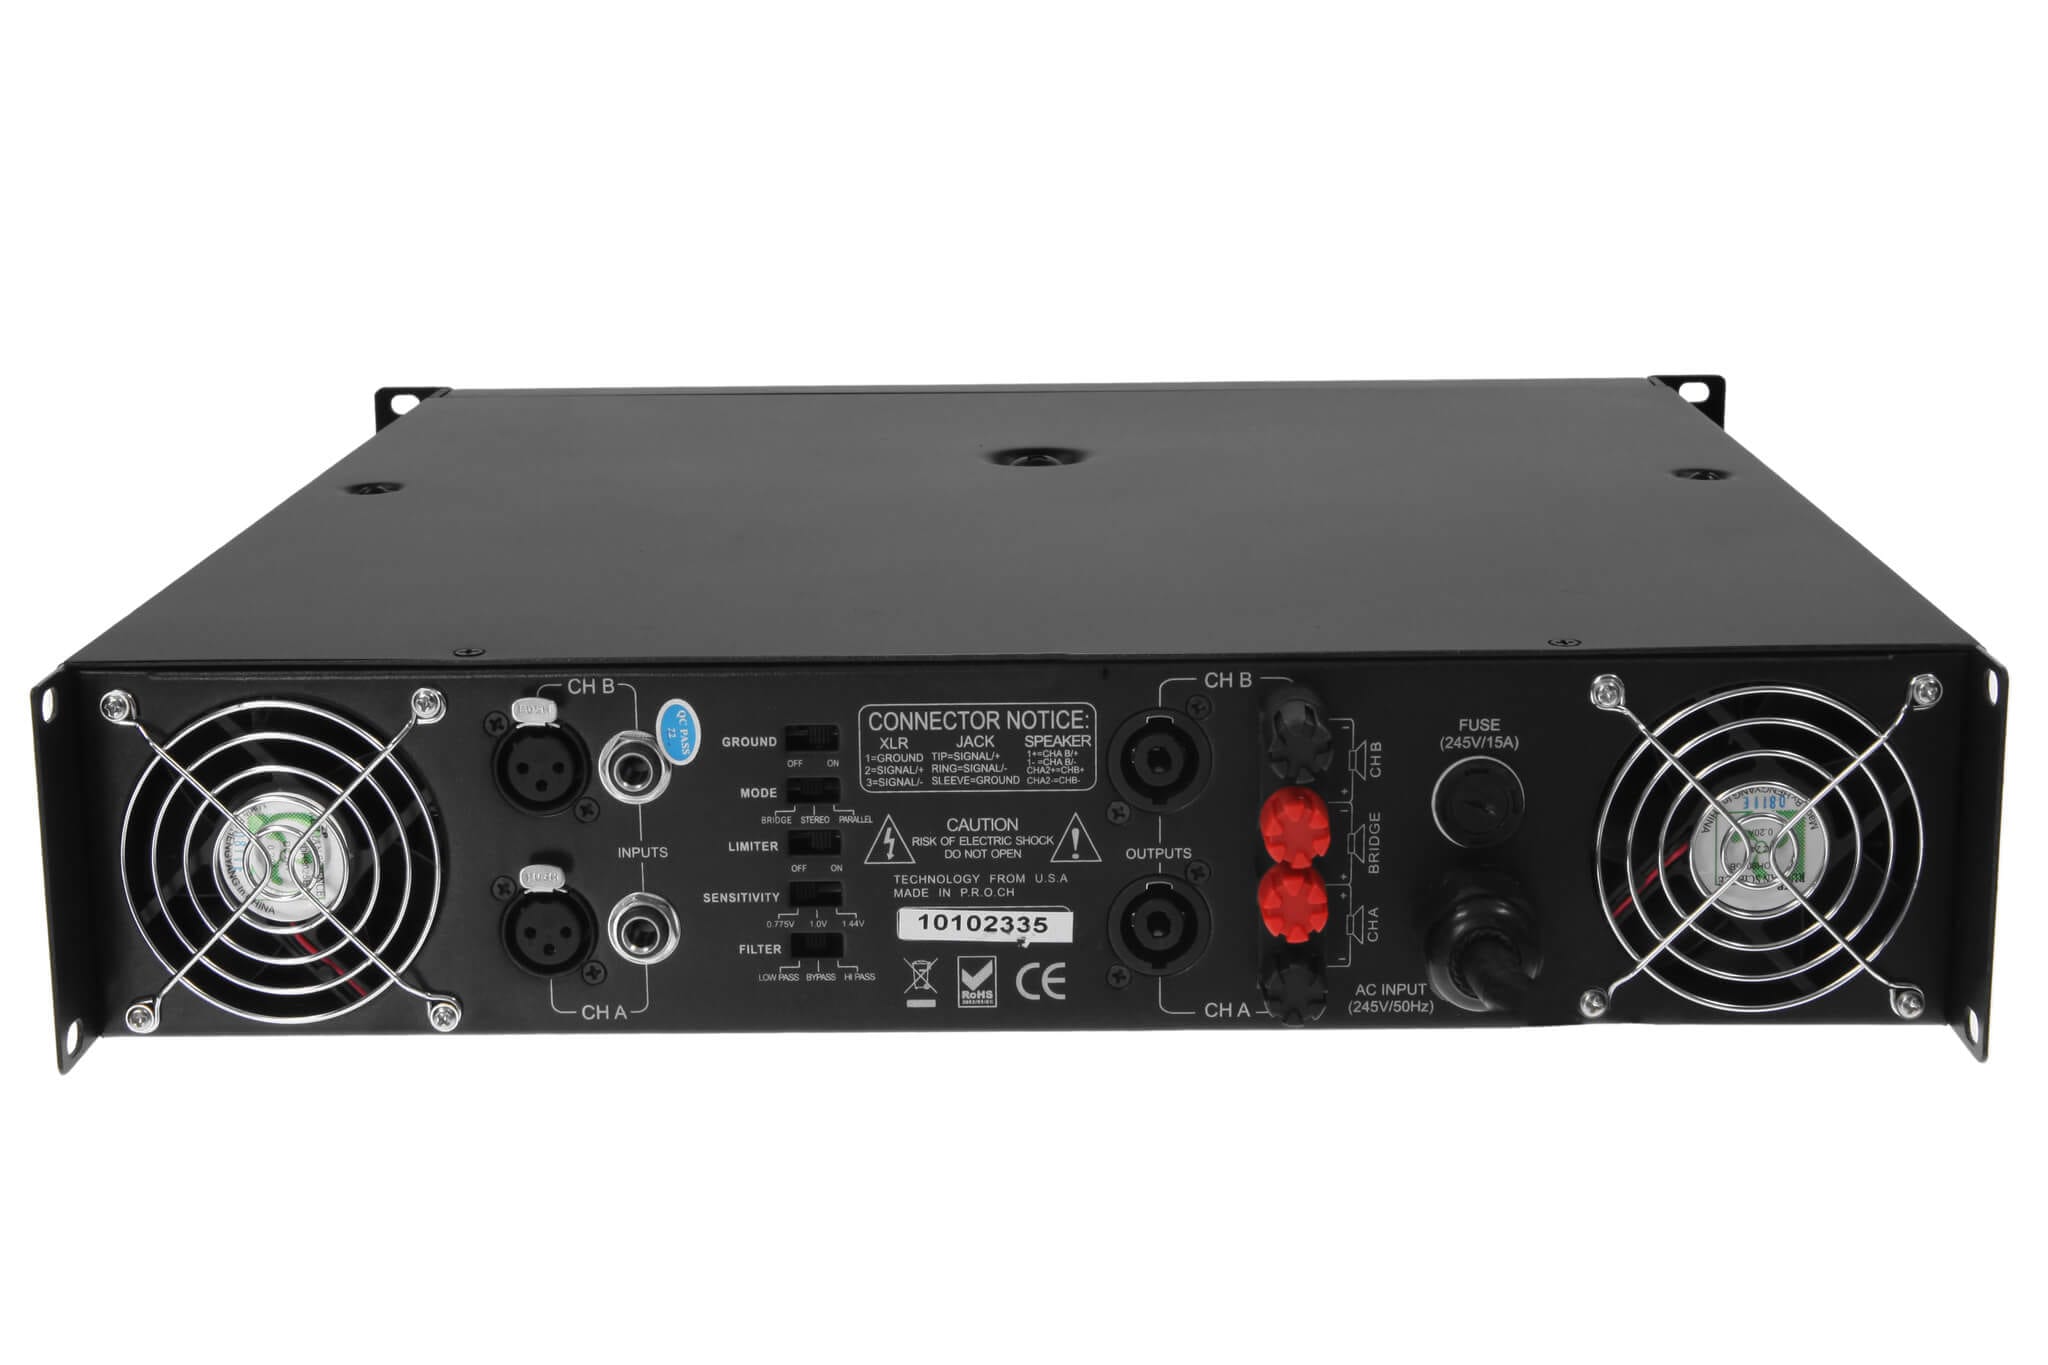 American Audio VLP2500 по цене 98 770 ₽